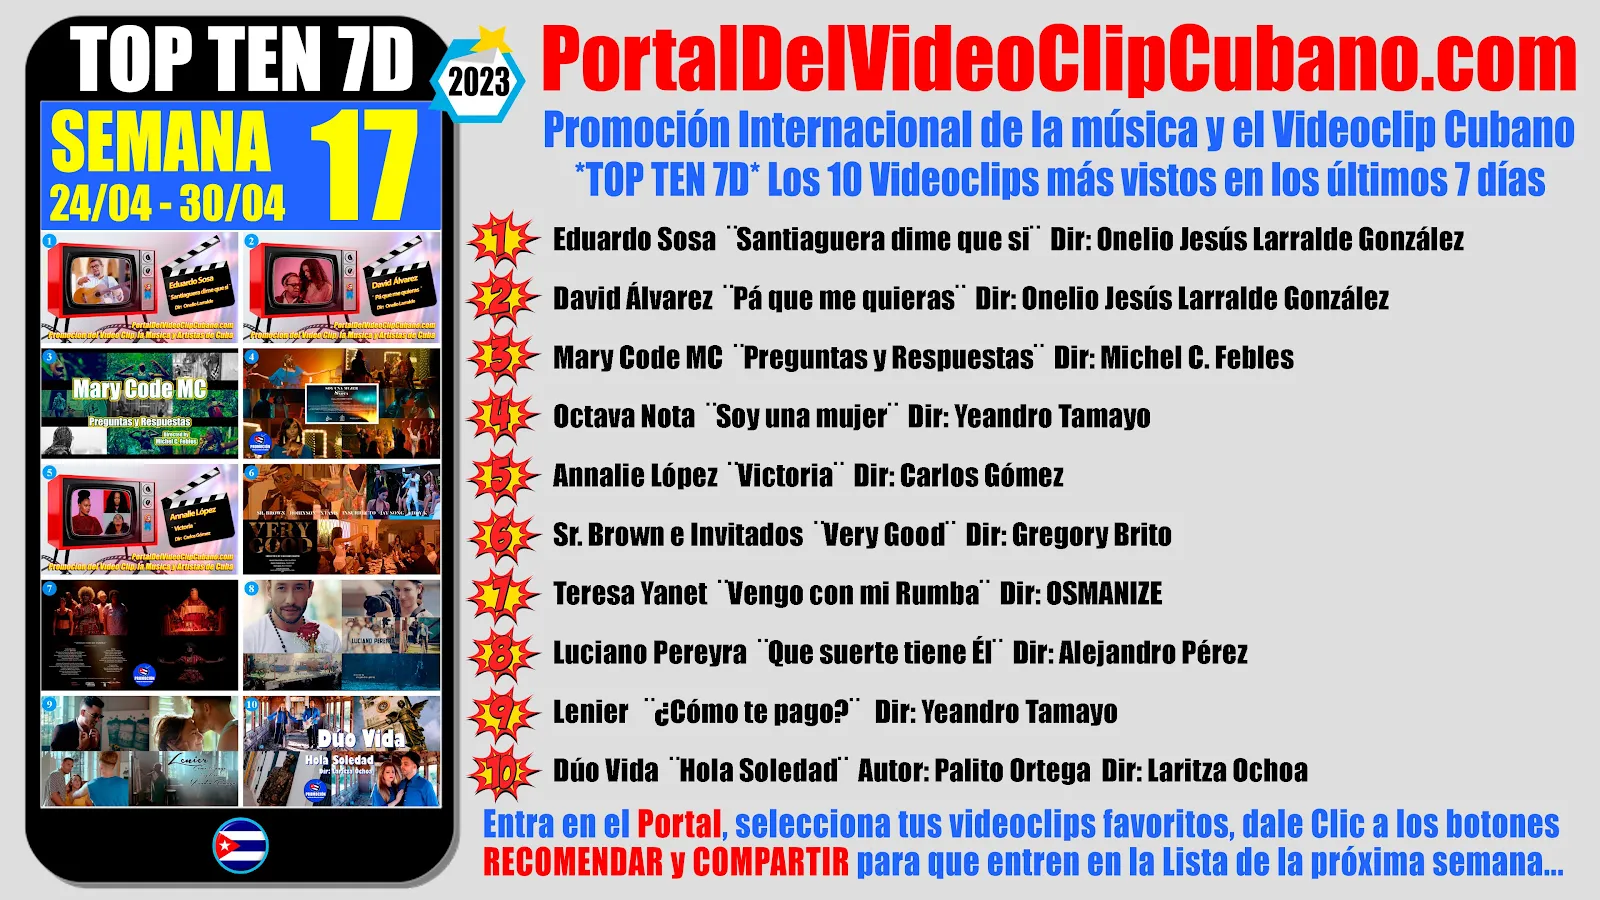 Artistas ganadores del * TOP TEN 7D * con los 10 Videoclips más vistos en la semana 17 (24/04 a 30/04 de 2023) en el Portal Del Vídeo Clip Cubano